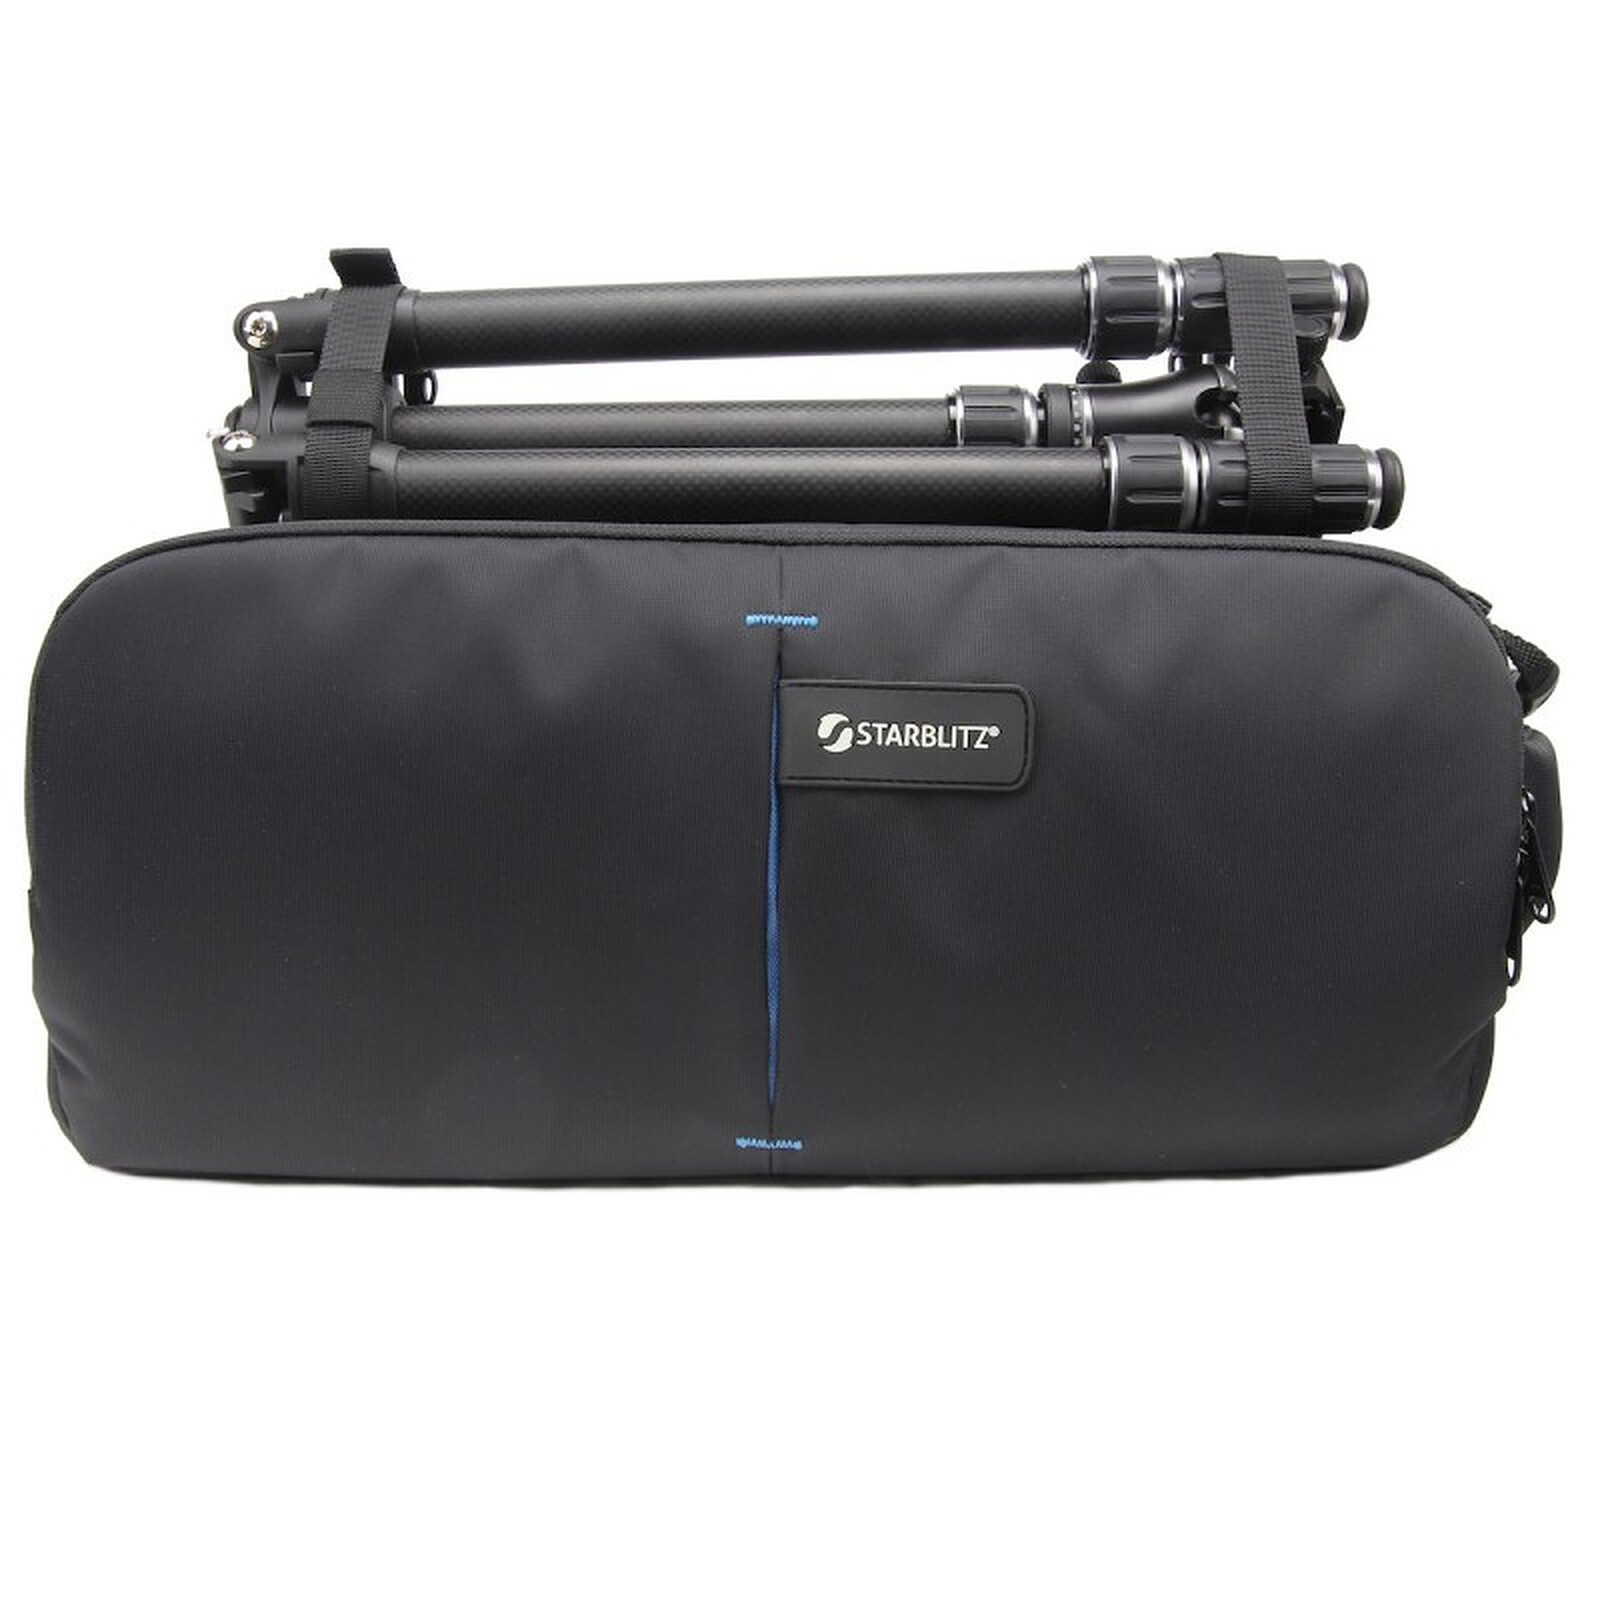 Starblitz Plumber 400 - Camera bag & case - LDLC 3-year warranty